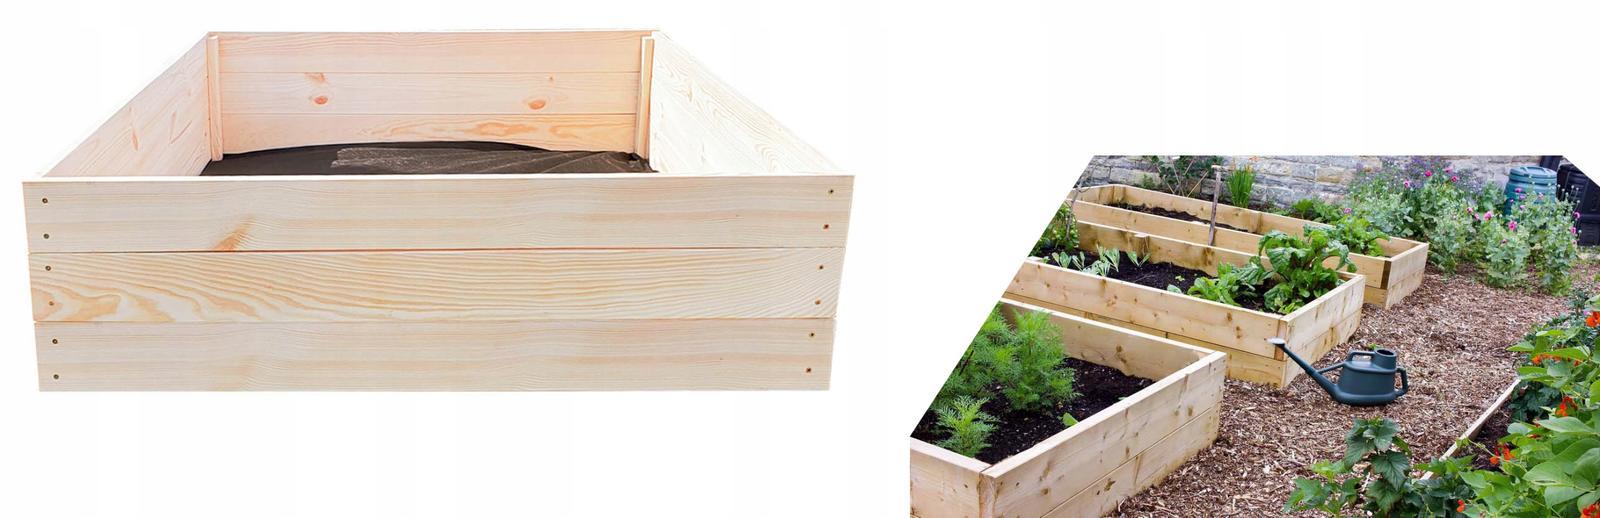 Warzywniak drewniany skrzynia na warzywa inspekt zielnik 120x120 cm + poradnik do ogrodu nr. 11